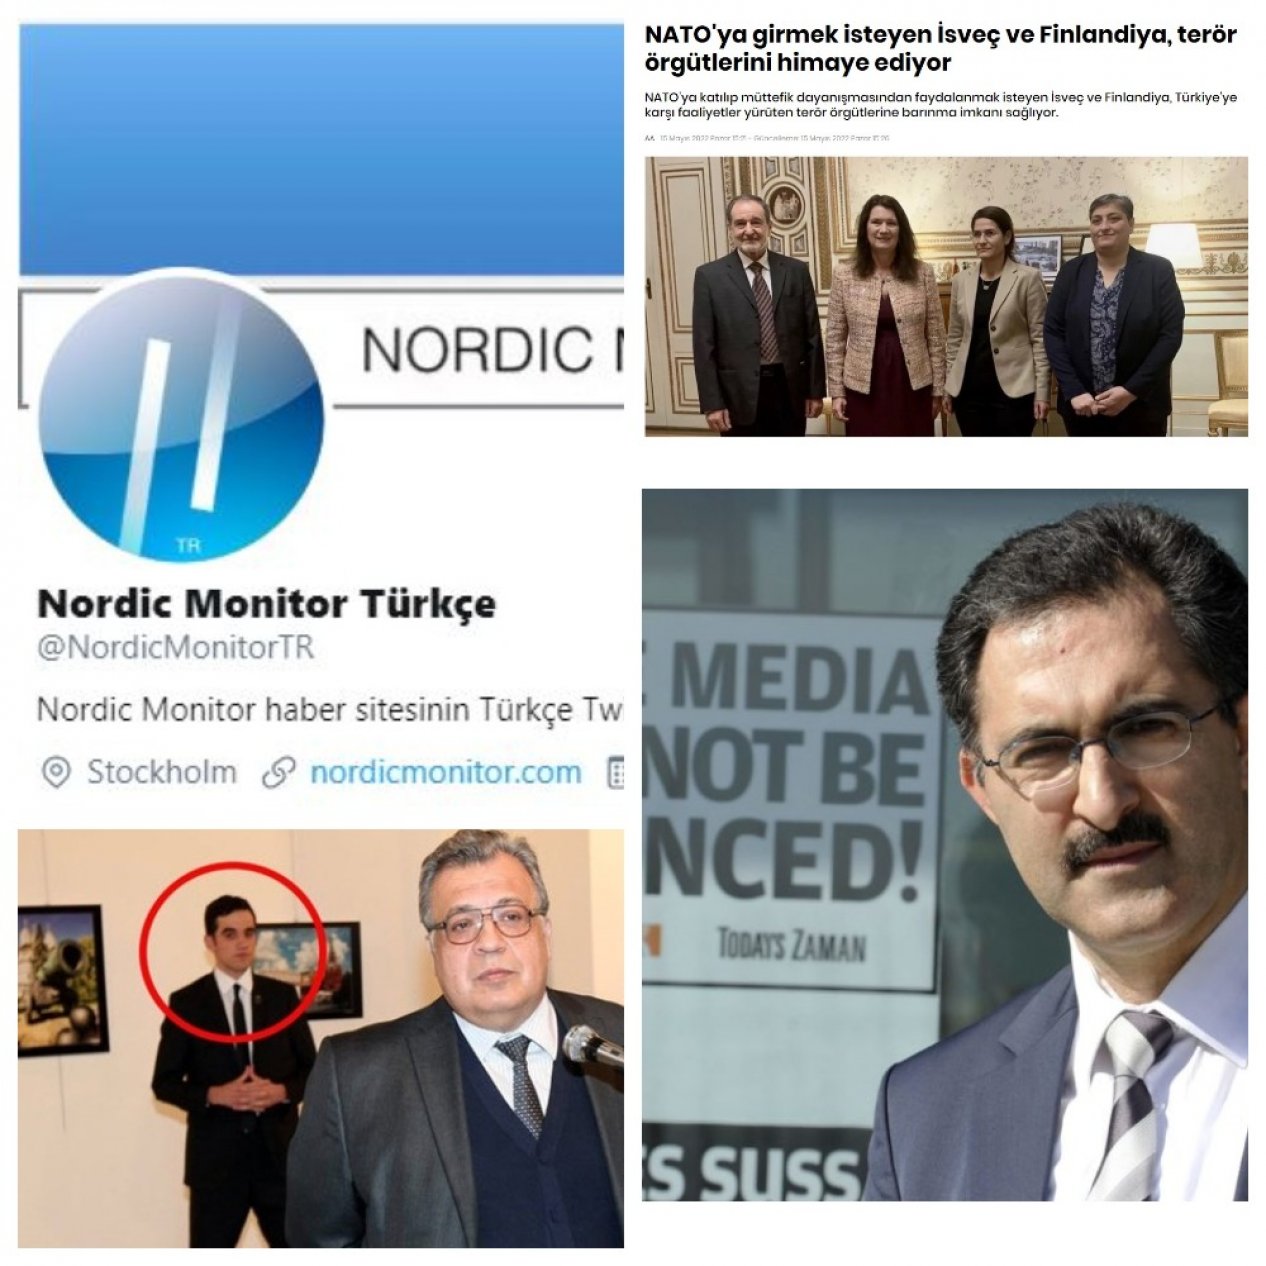 Nordic Monitor sitesinin neden İsveç’te barınmasına izin veriliyor?!